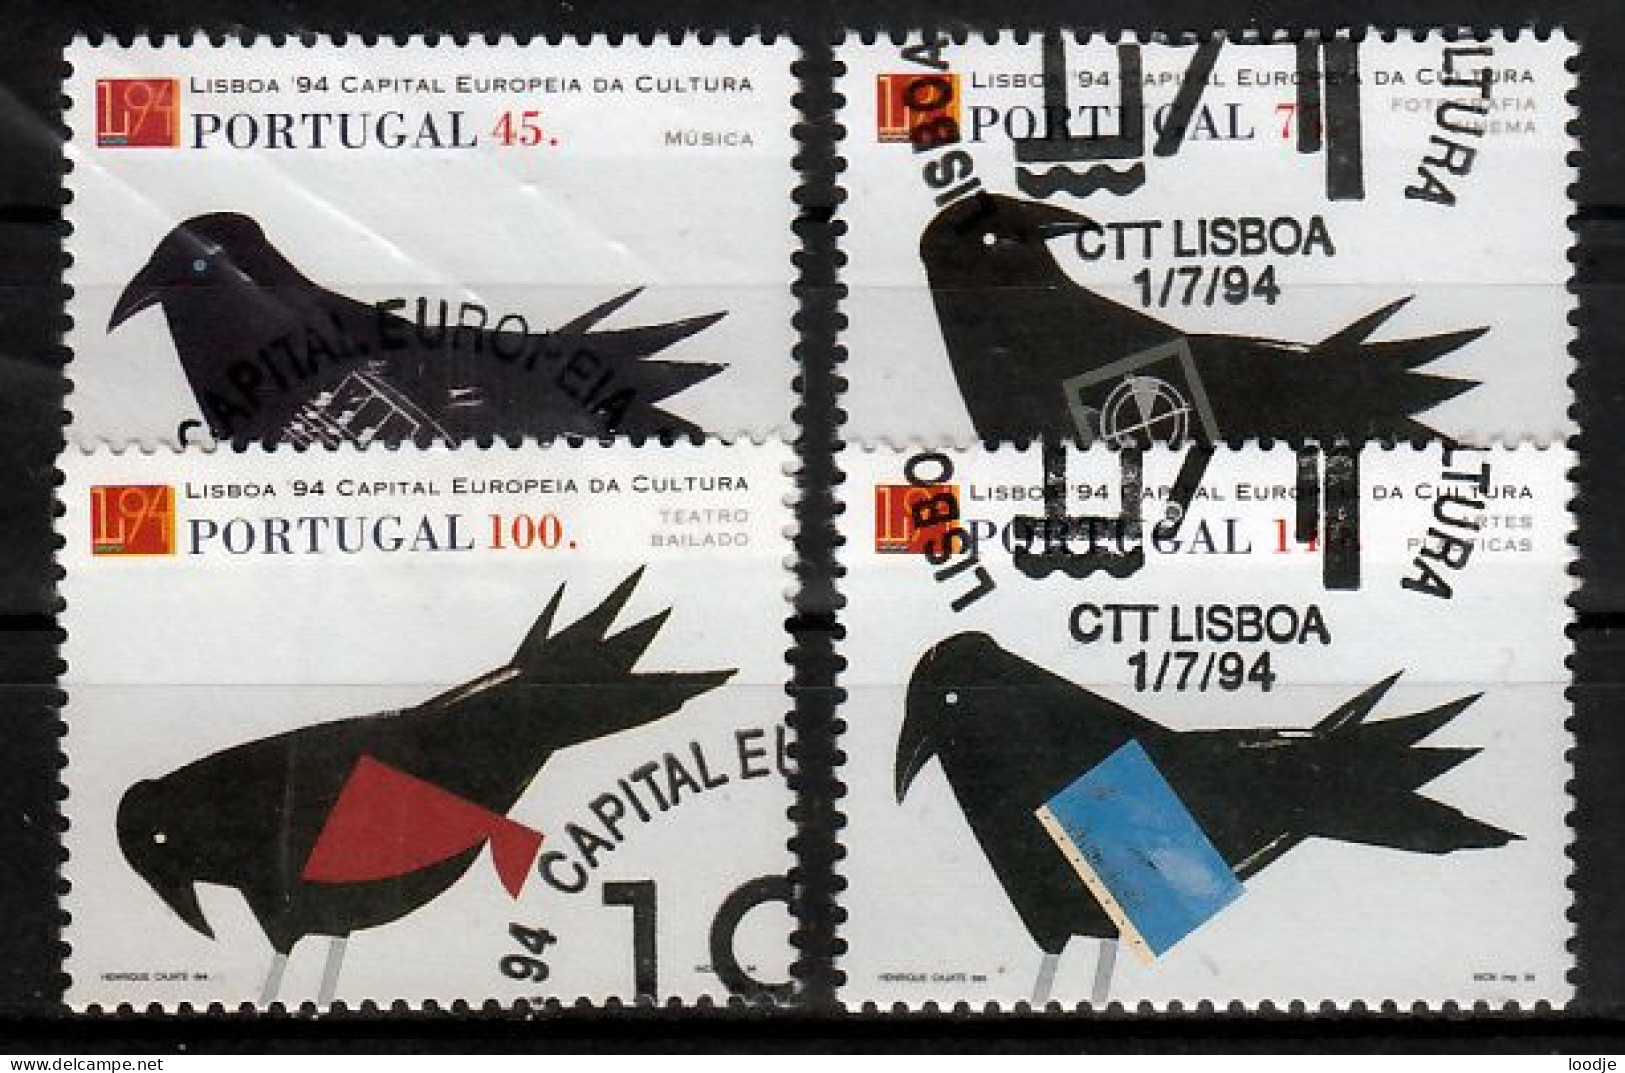 Portugal Mi 2017,2020 Lissabon Kultuurhoofdstad Europa 1994 Gestempeld - Used Stamps